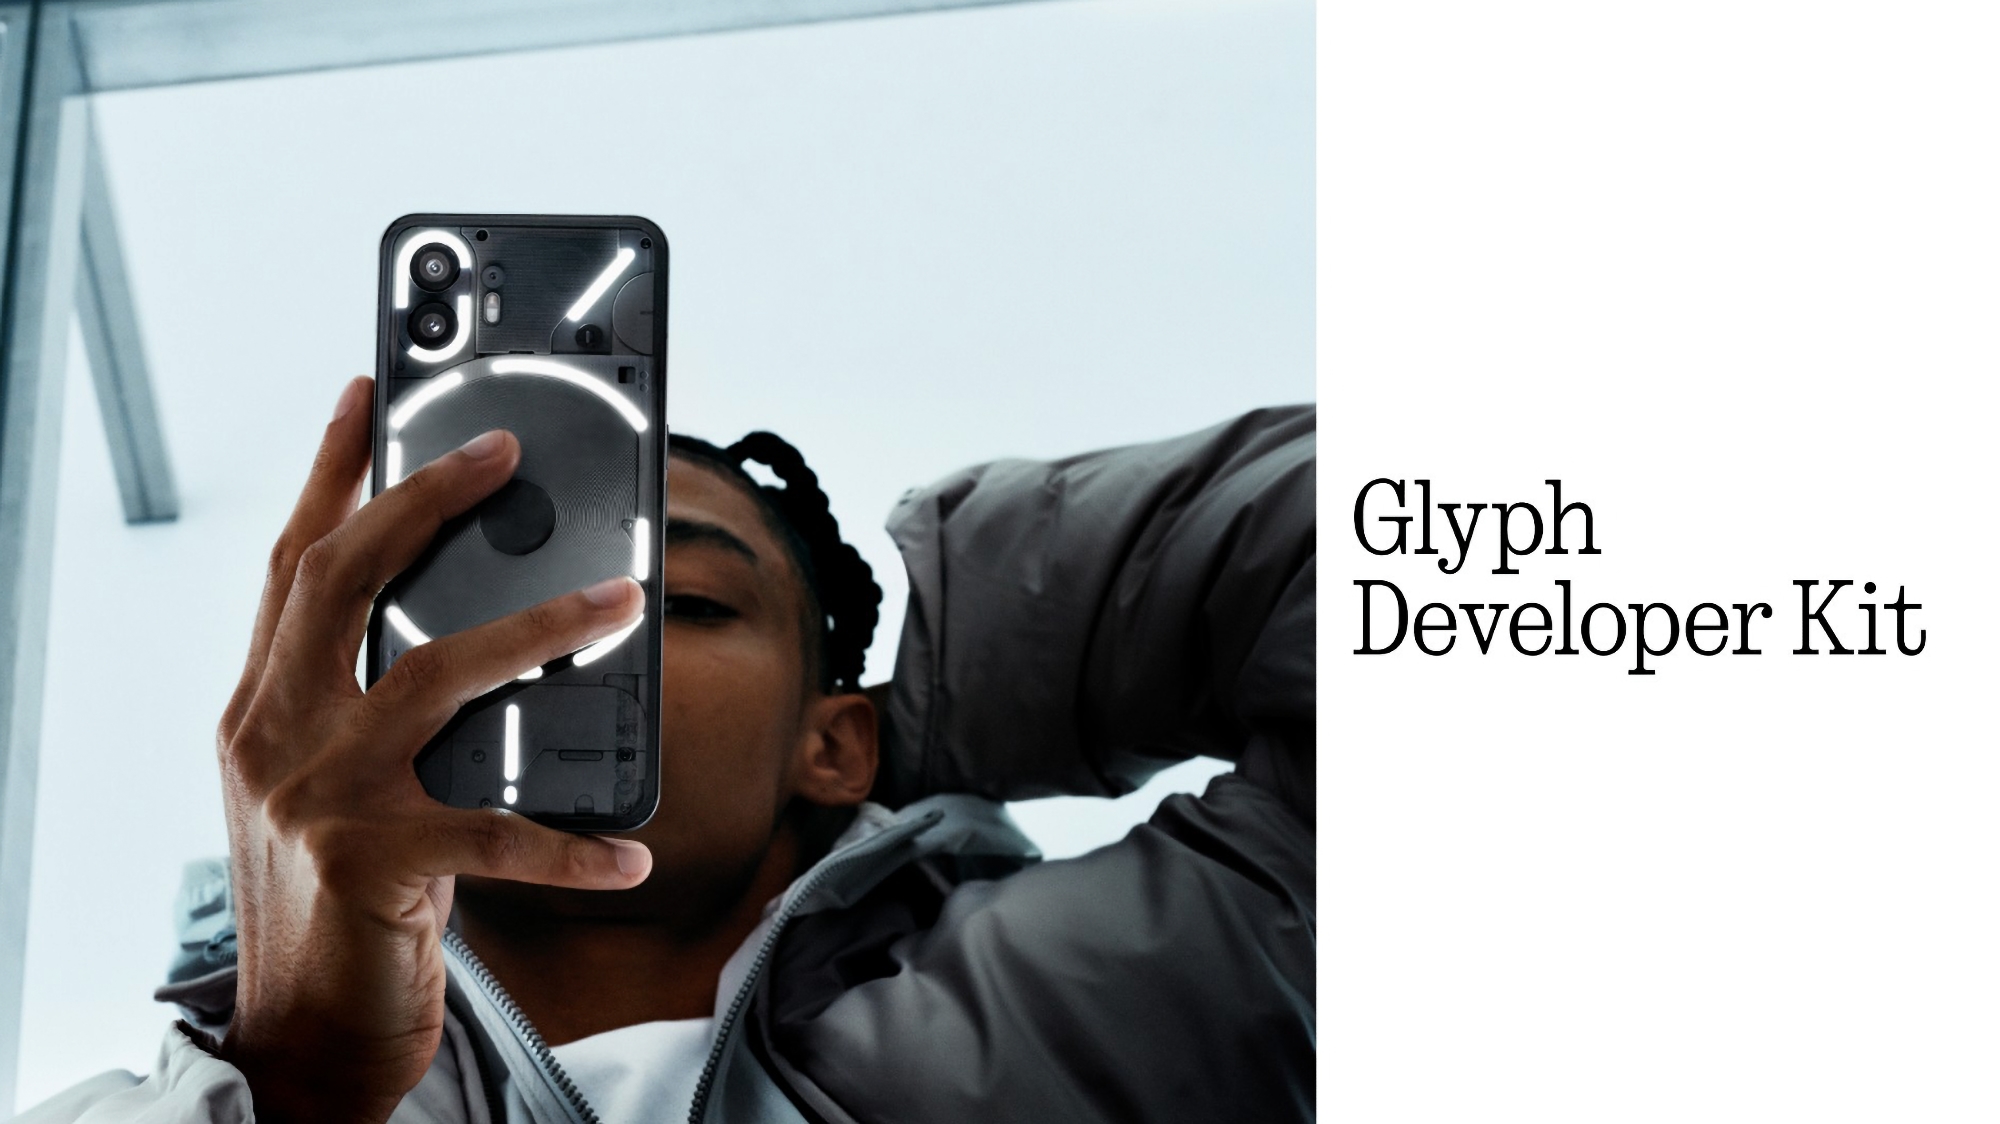 Firma Nothing ogłosiła Glyph Developer Kit dla deweloperów aplikacji